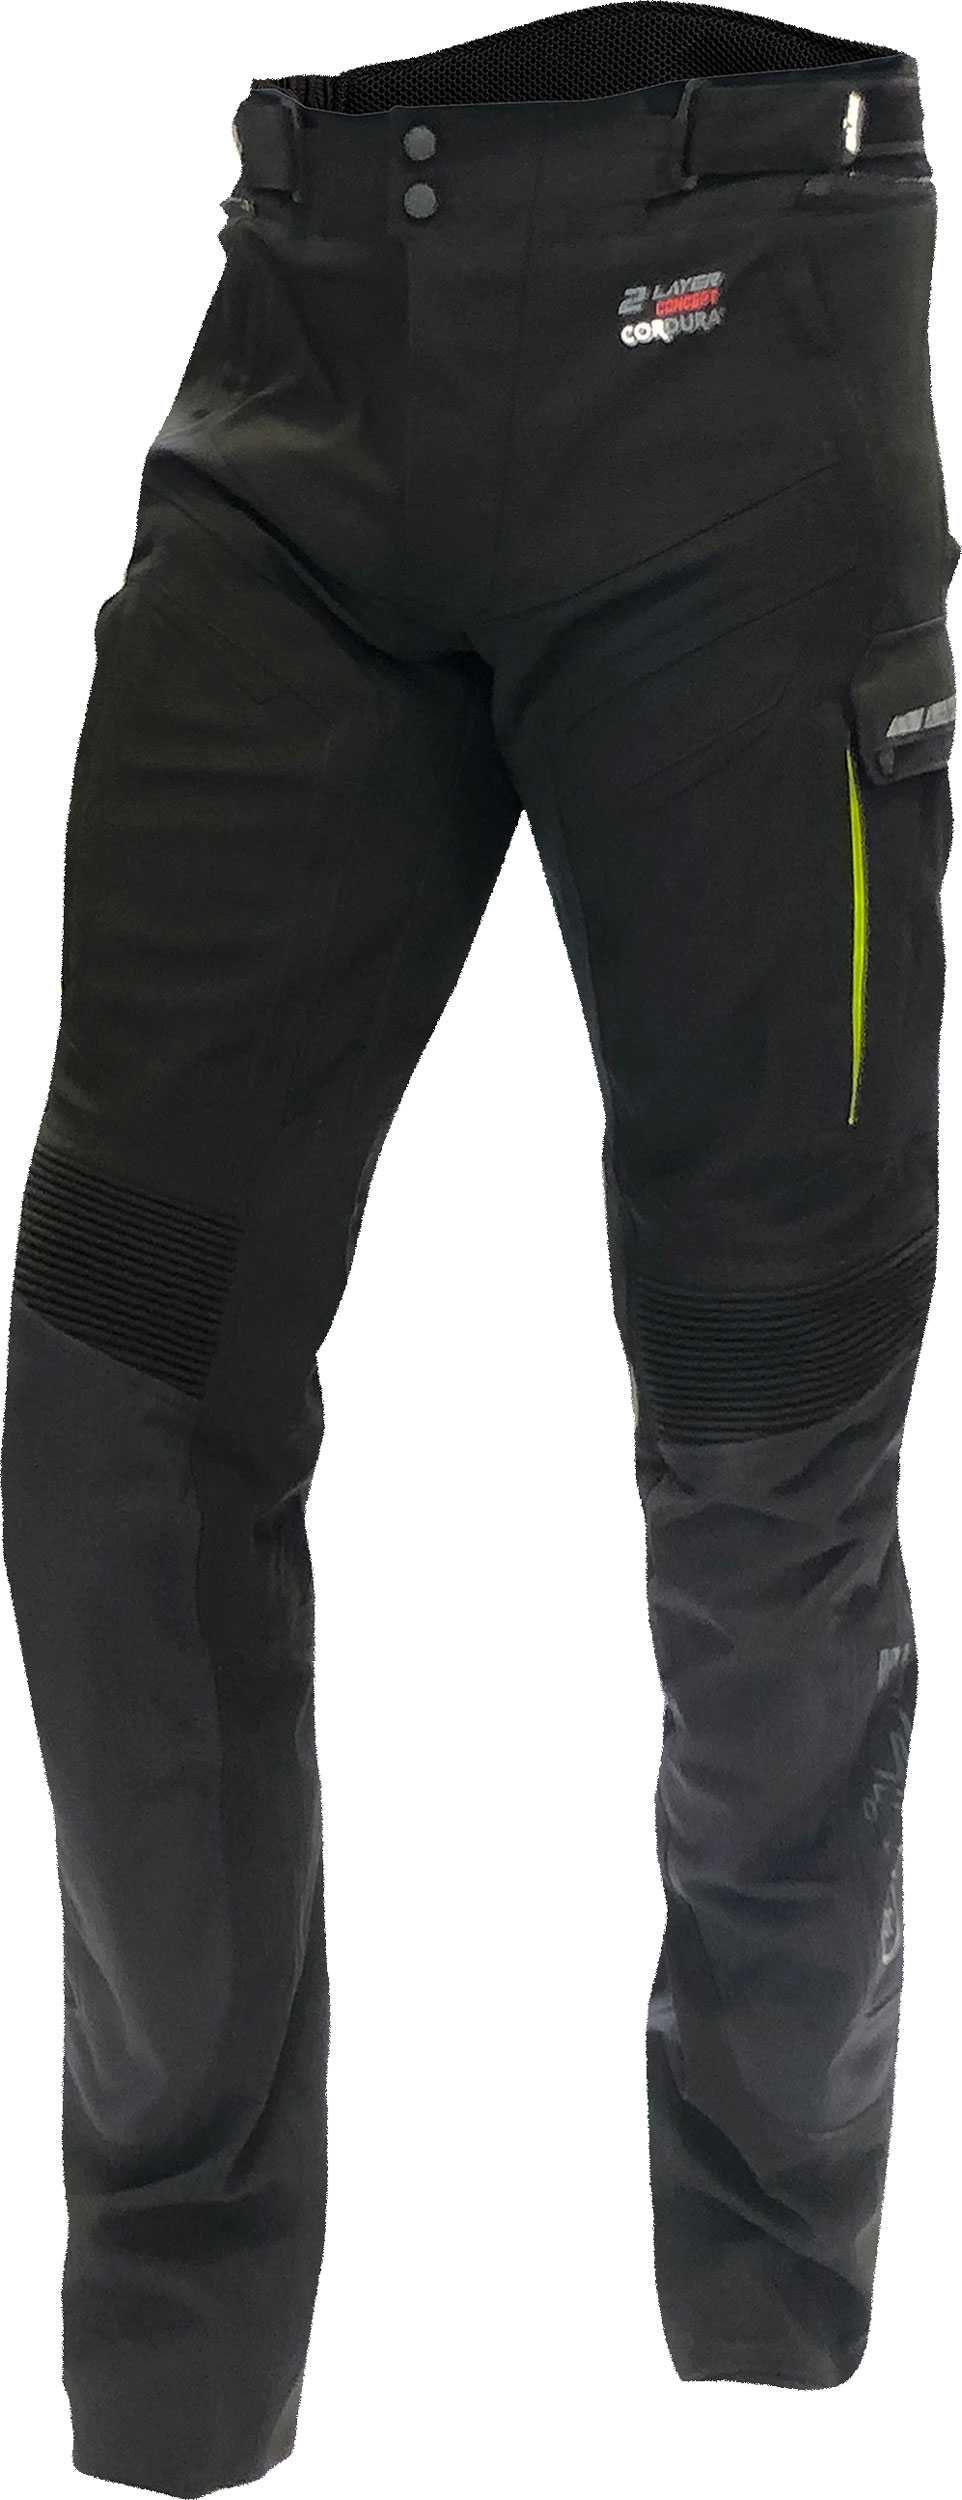 Büse Storm, textile pants waterproof , color: Black/Neon-Yellow , size: 62